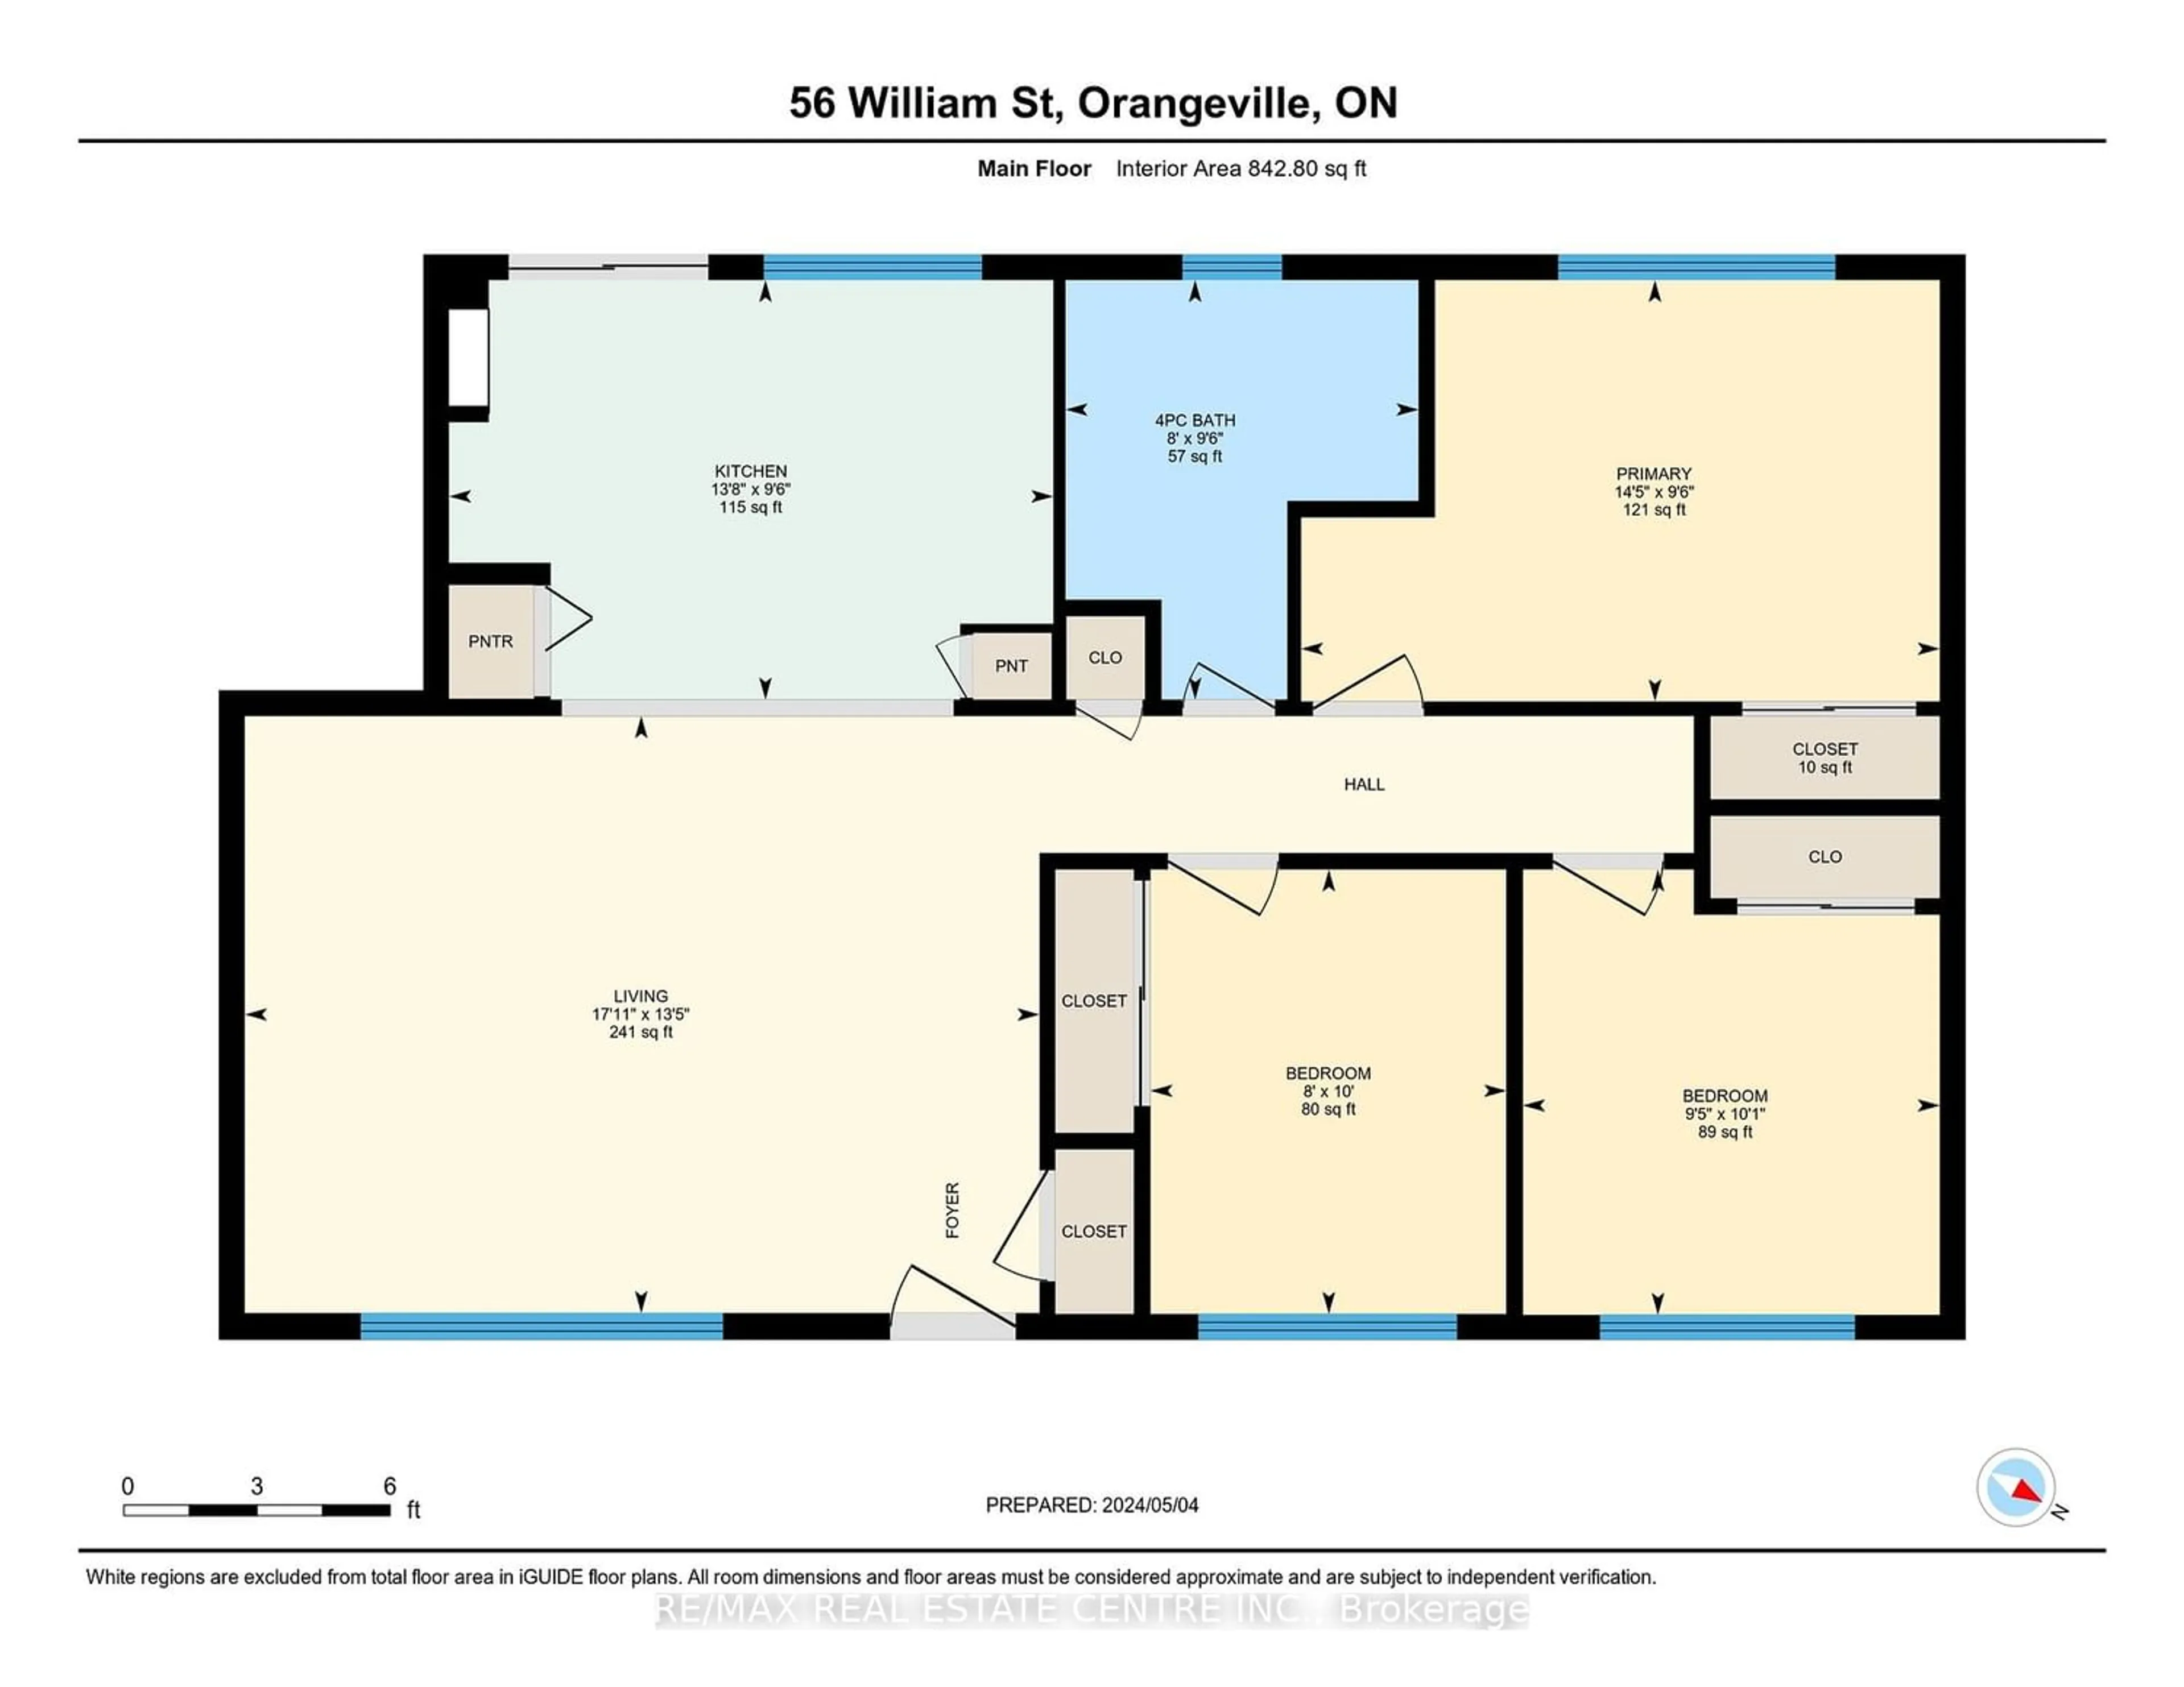 Floor plan for 56 William St, Orangeville Ontario L9W 2R9